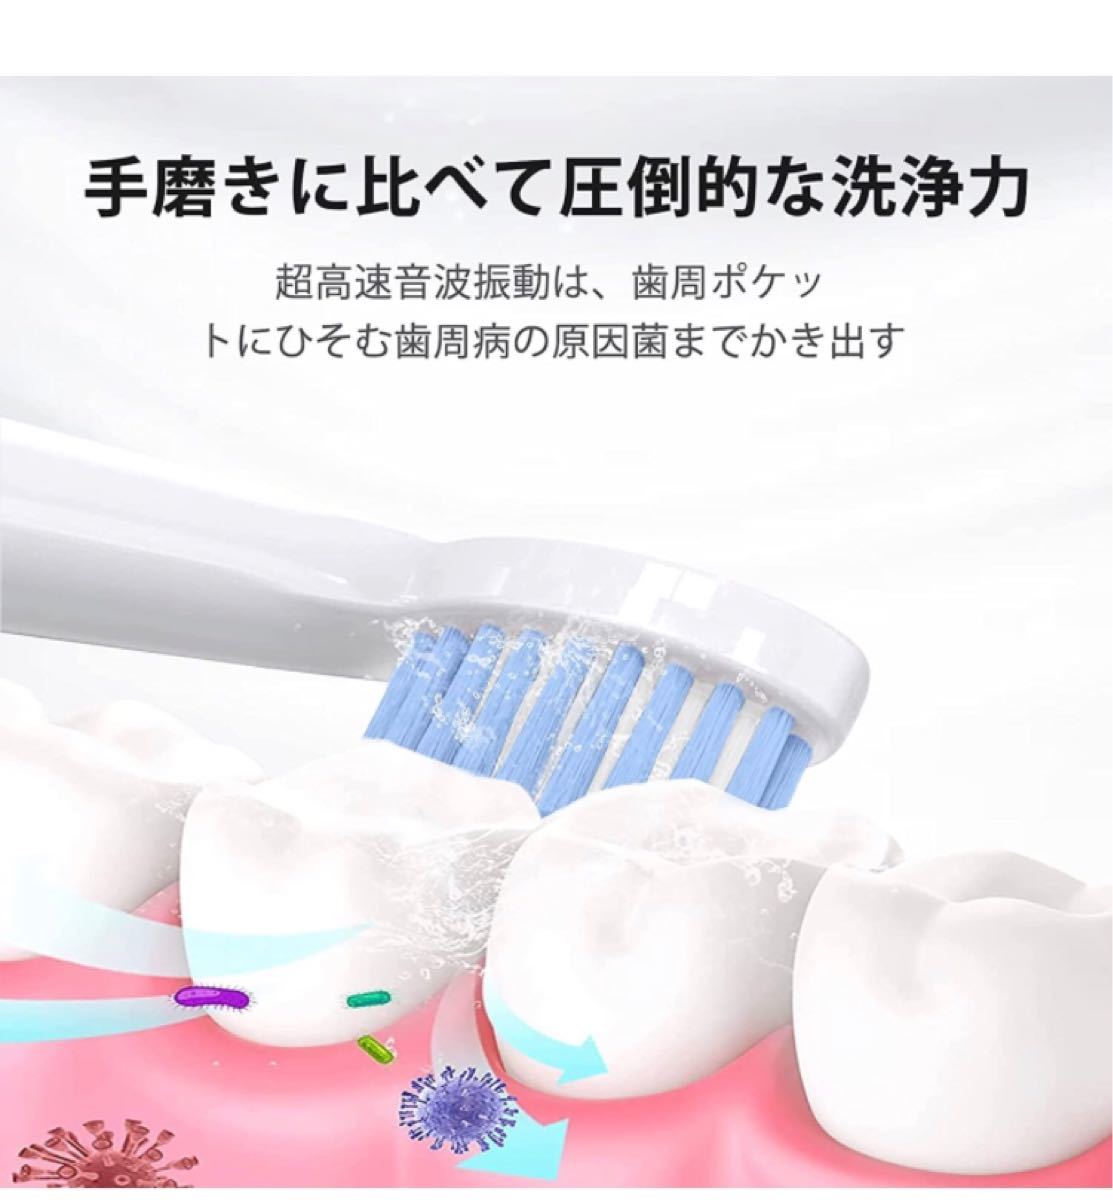 電動歯ブラシ 歯ブラシ ハブラシ JTF 音波歯ブラシ 充電式 ク キャンデー色 IPX7防水 4時間がかかって30日に使用 三つ